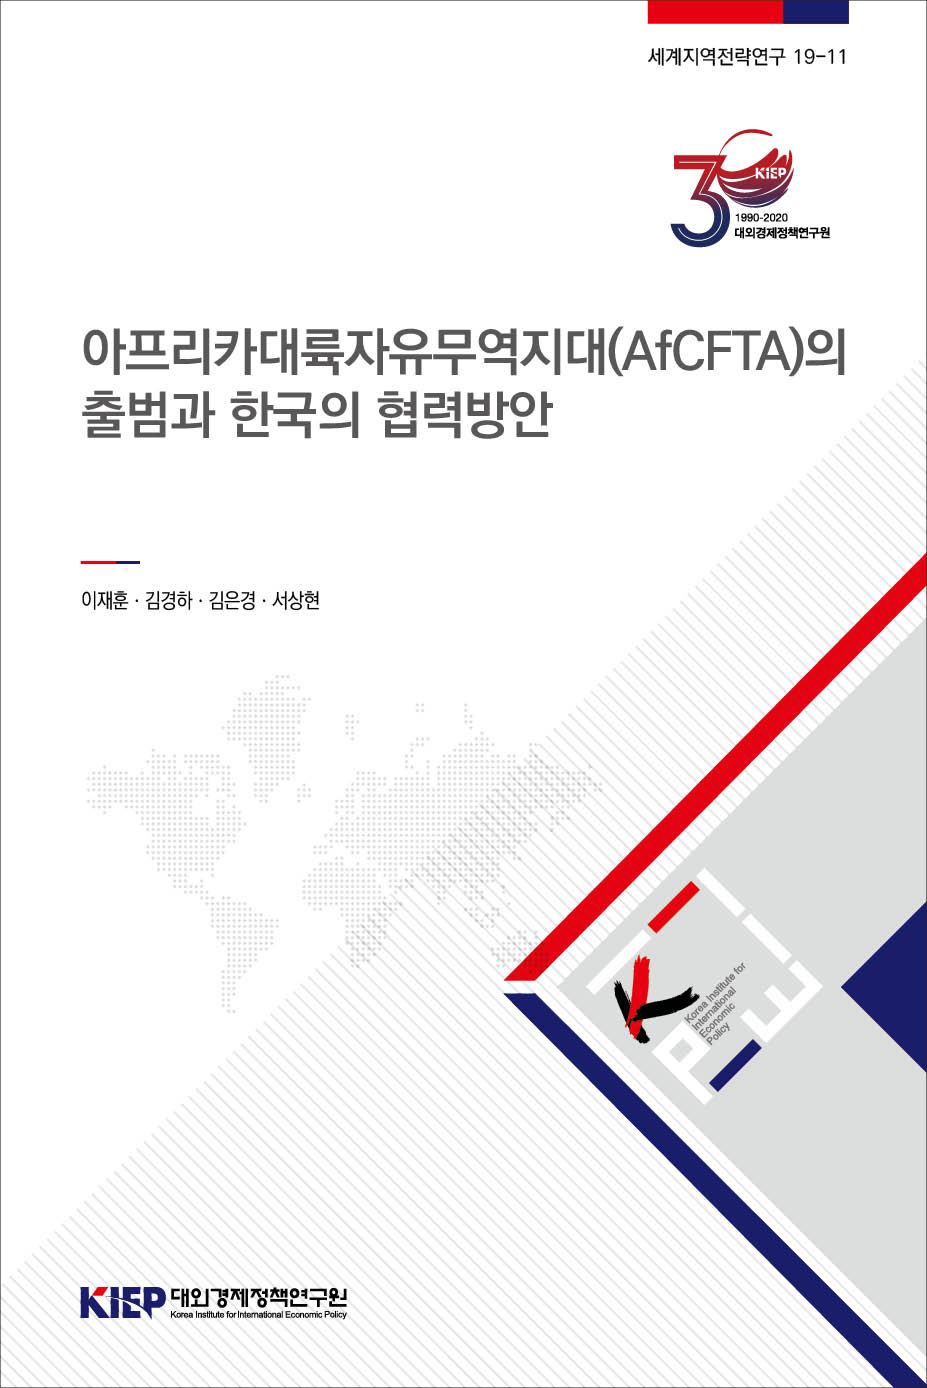 아프리카대륙자유무역지대(AfCFTA)의 출범과 한국의 협력방안